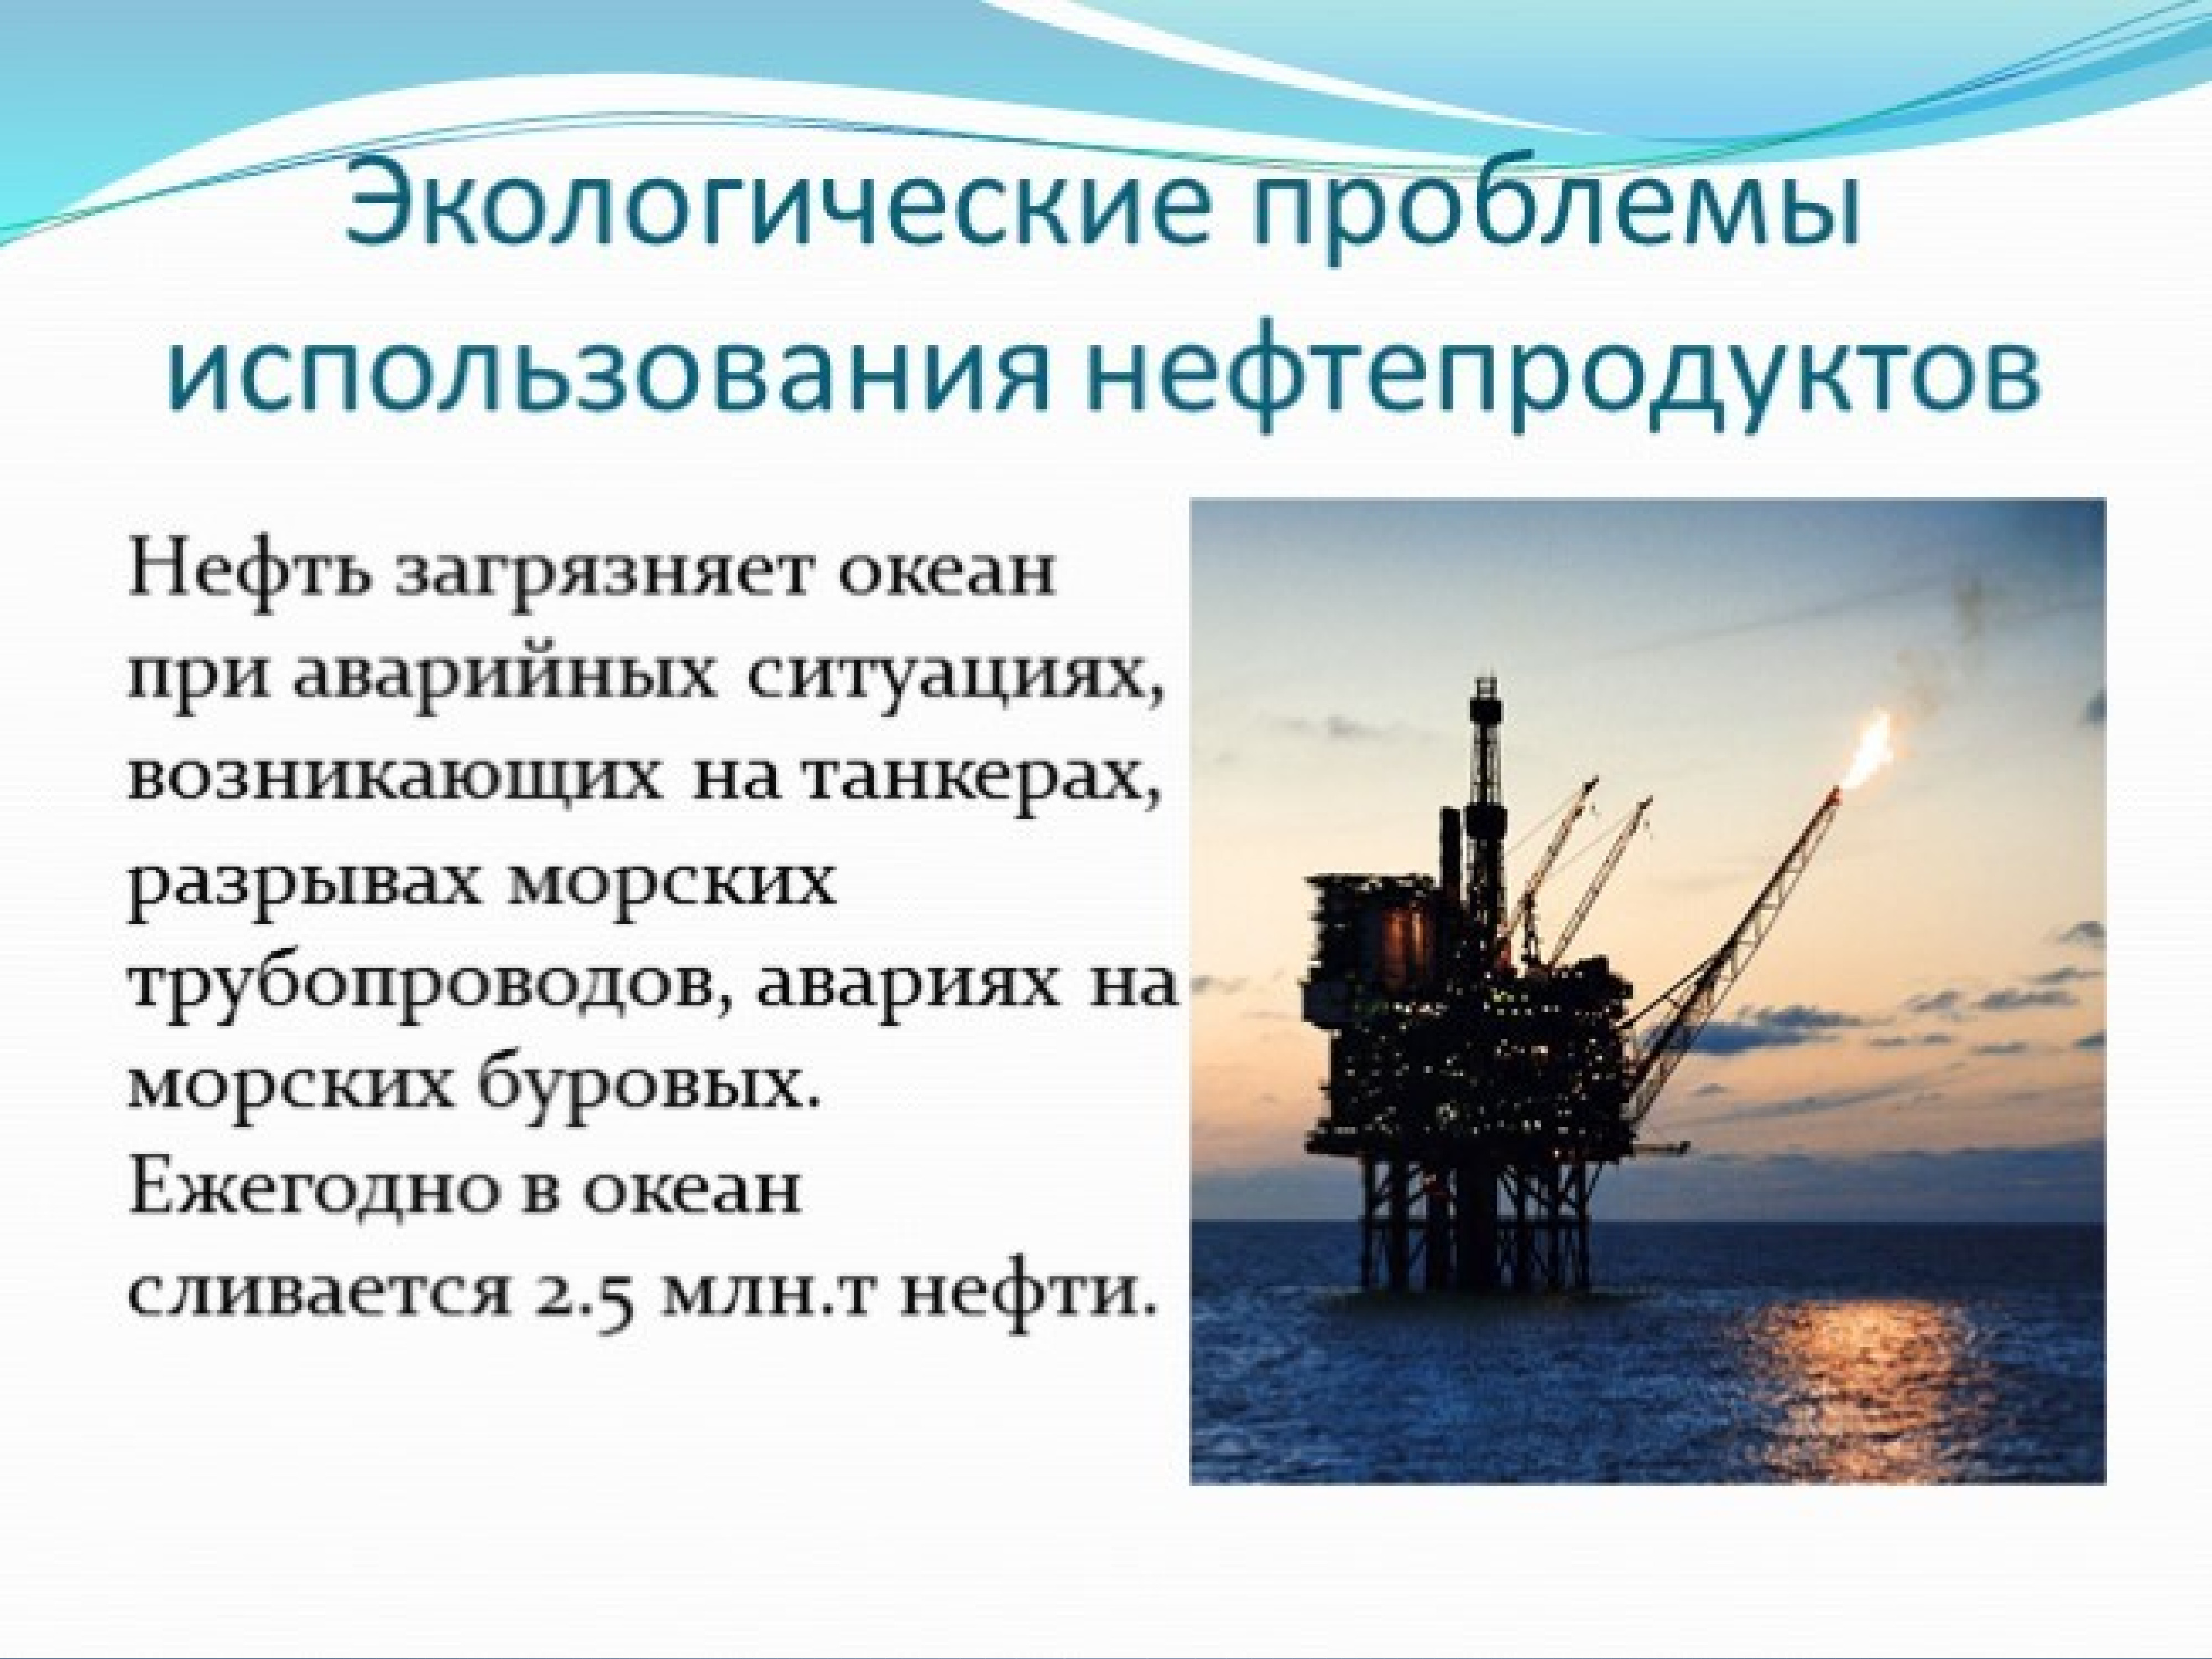 Российская промышленность проблема. Экологические проблемы нефтяной отрасли. Экологические проблемы нефтяной промышленности. Экологические проблемы в нефтедобывающей отрасли. Экологические проблемы добычи нефти.